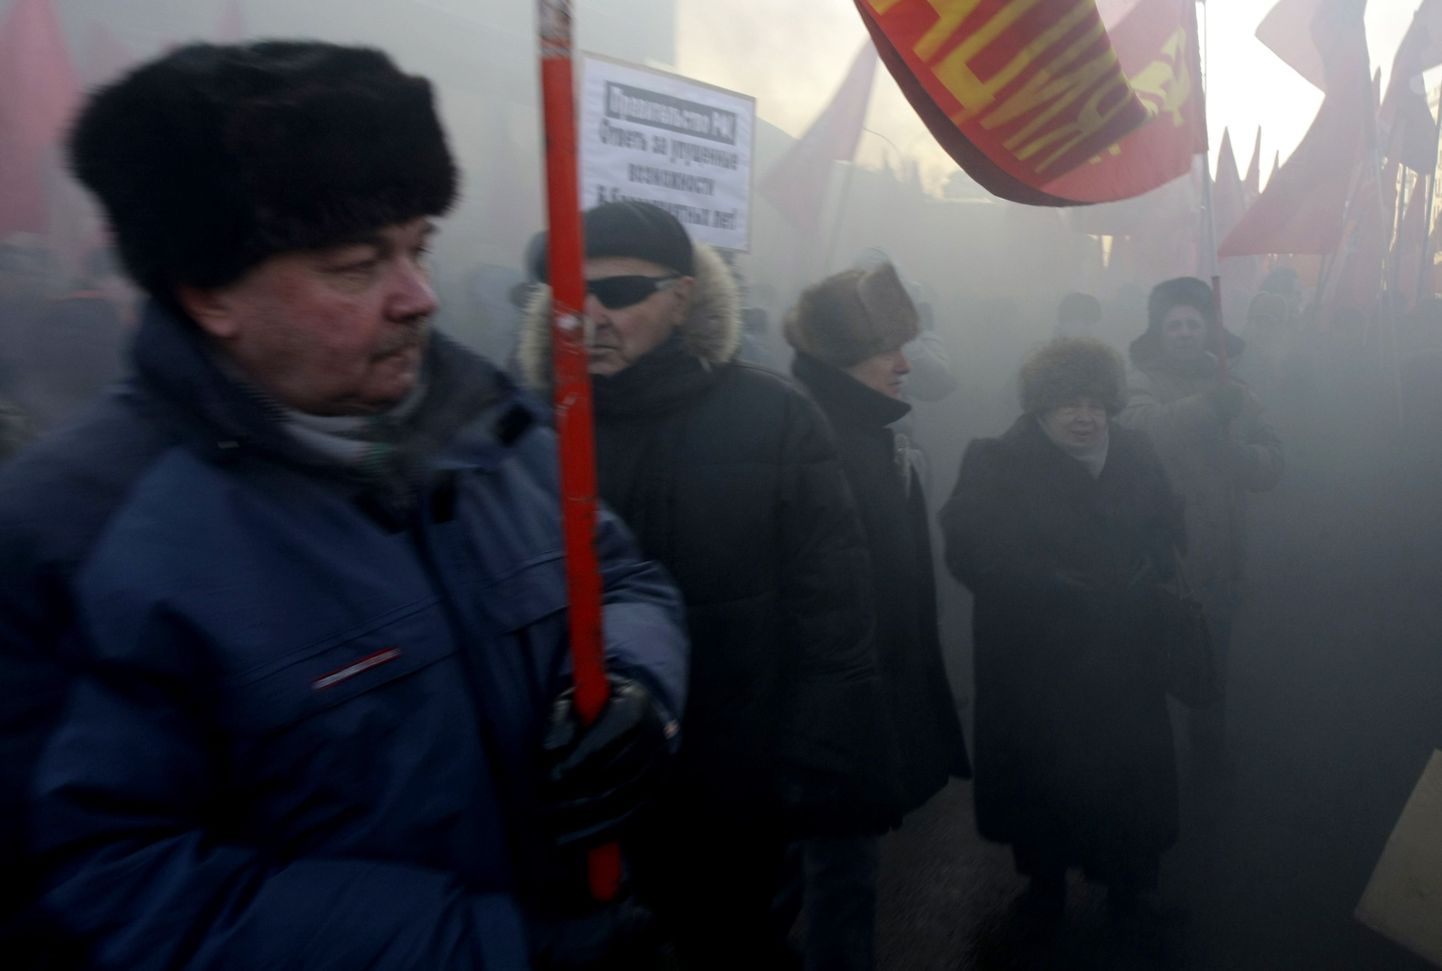 Kommunistide miitingu järel Moskvasse Triumfi väljakule jäänud kümmekond noort süütasid äkki suitsupommi ja hakkasid hüüdma «Me vajame teist Venemaad!», misjärel pidas miilits kinni viis inimest.